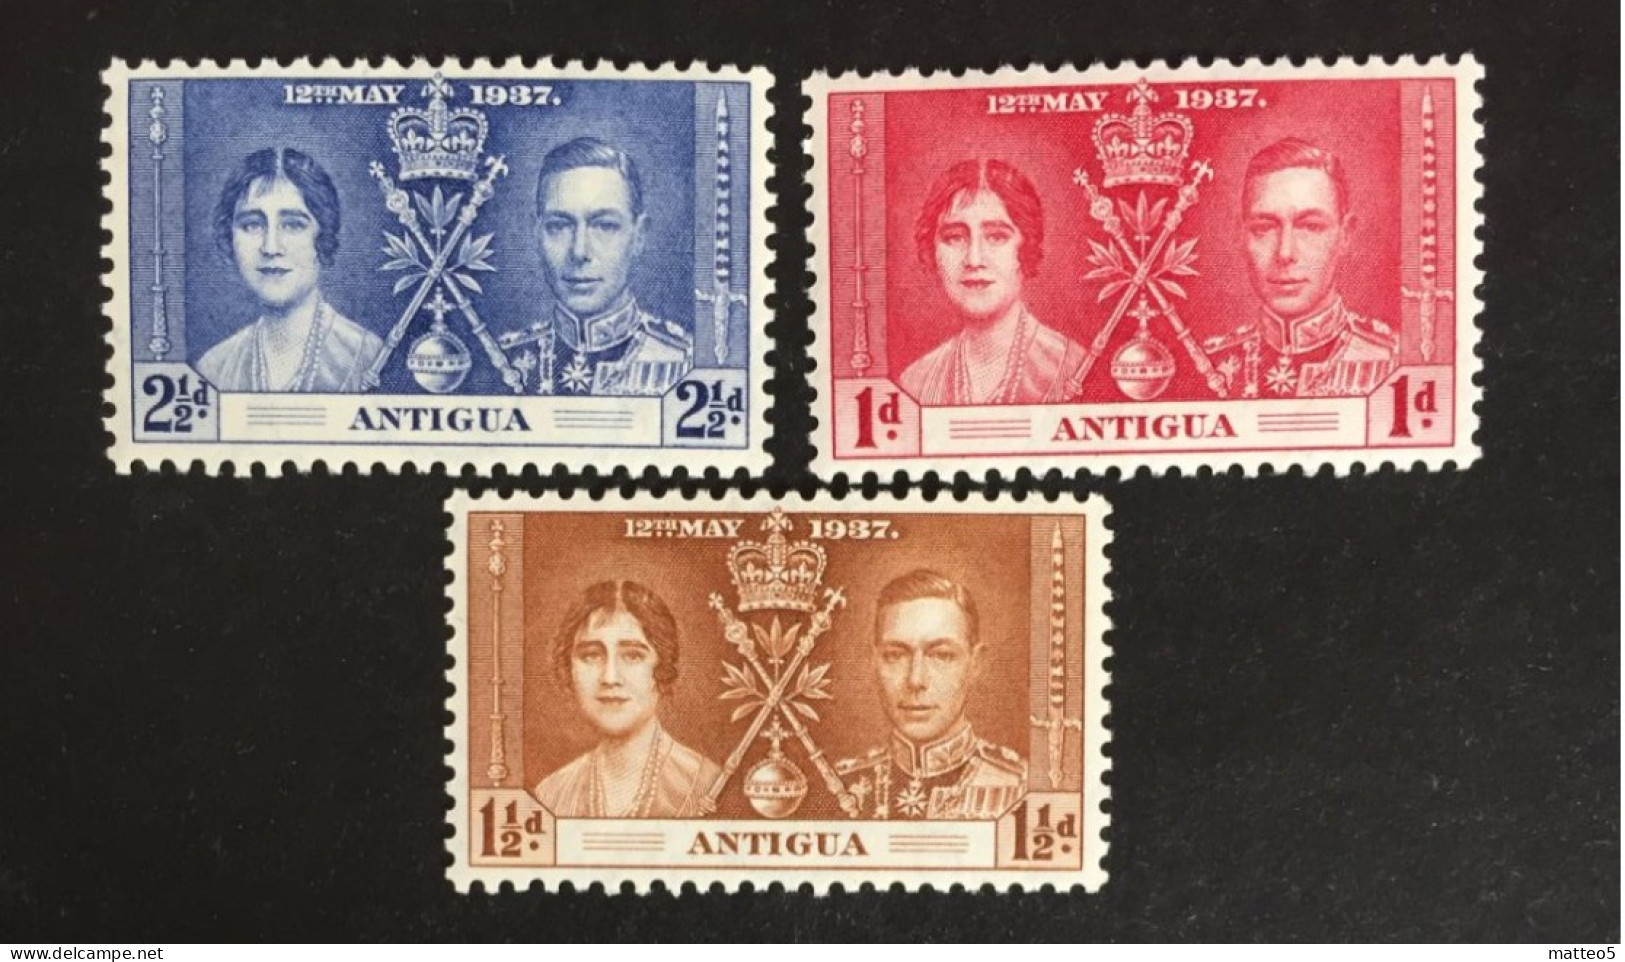 1937 - Antigua - Coronation Of King George VII And Queen Elizabeth - Unused - 1858-1960 Colonie Britannique